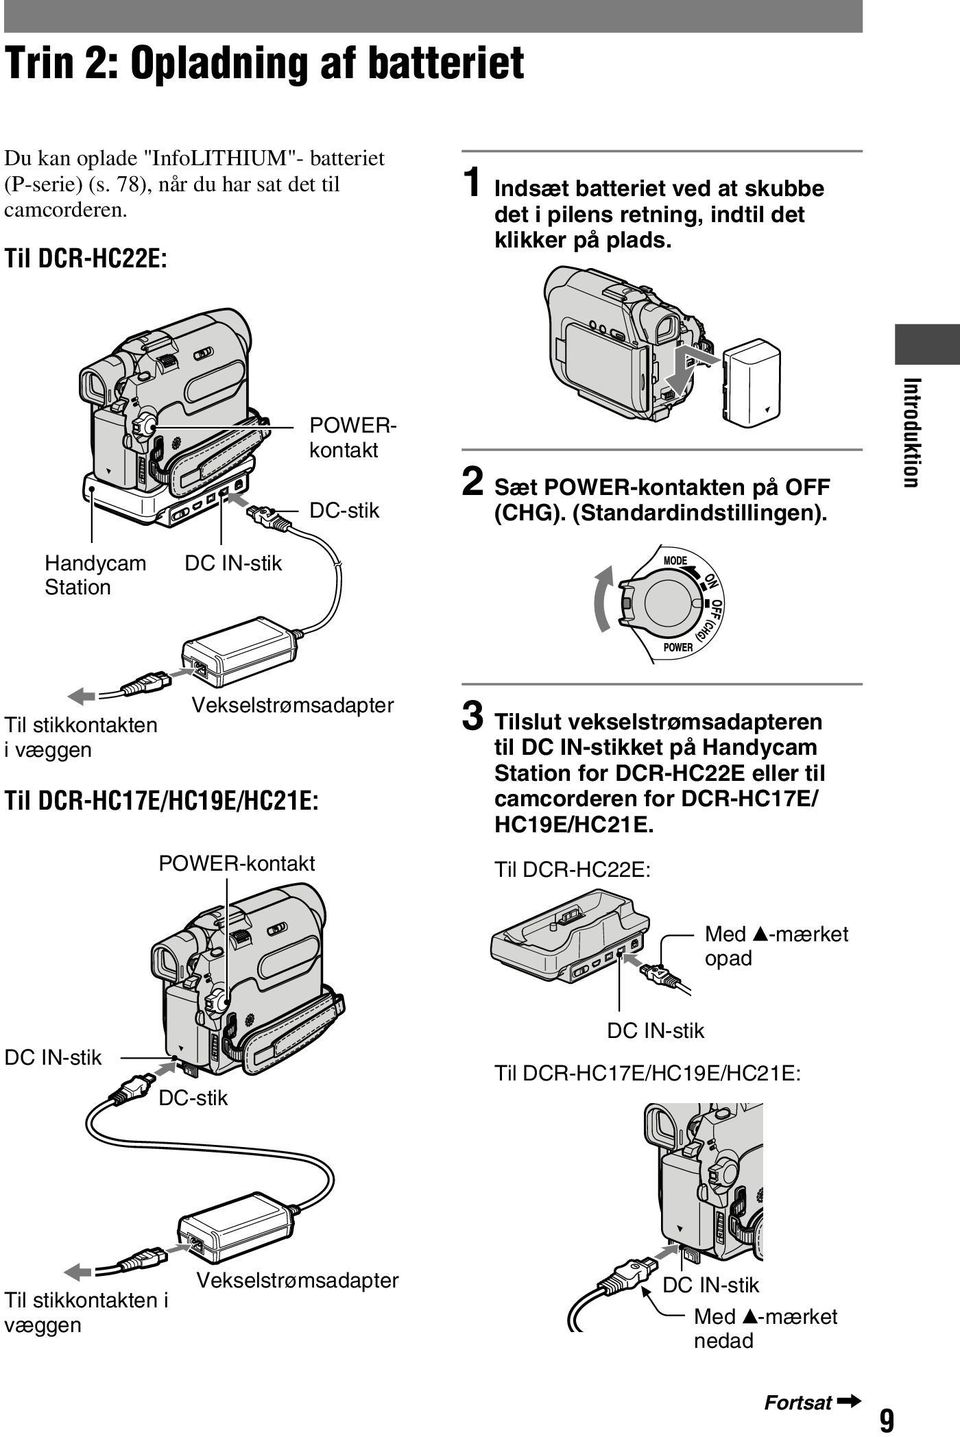 Introduktion Handycam Station DC IN-stik Til stikkontakten i væggen Vekselstrømsadapter Til DCR-HC17E/HC19E/HC21E: POWER-kontakt 3 Tilslut vekselstrømsadapteren til DC IN-stikket på